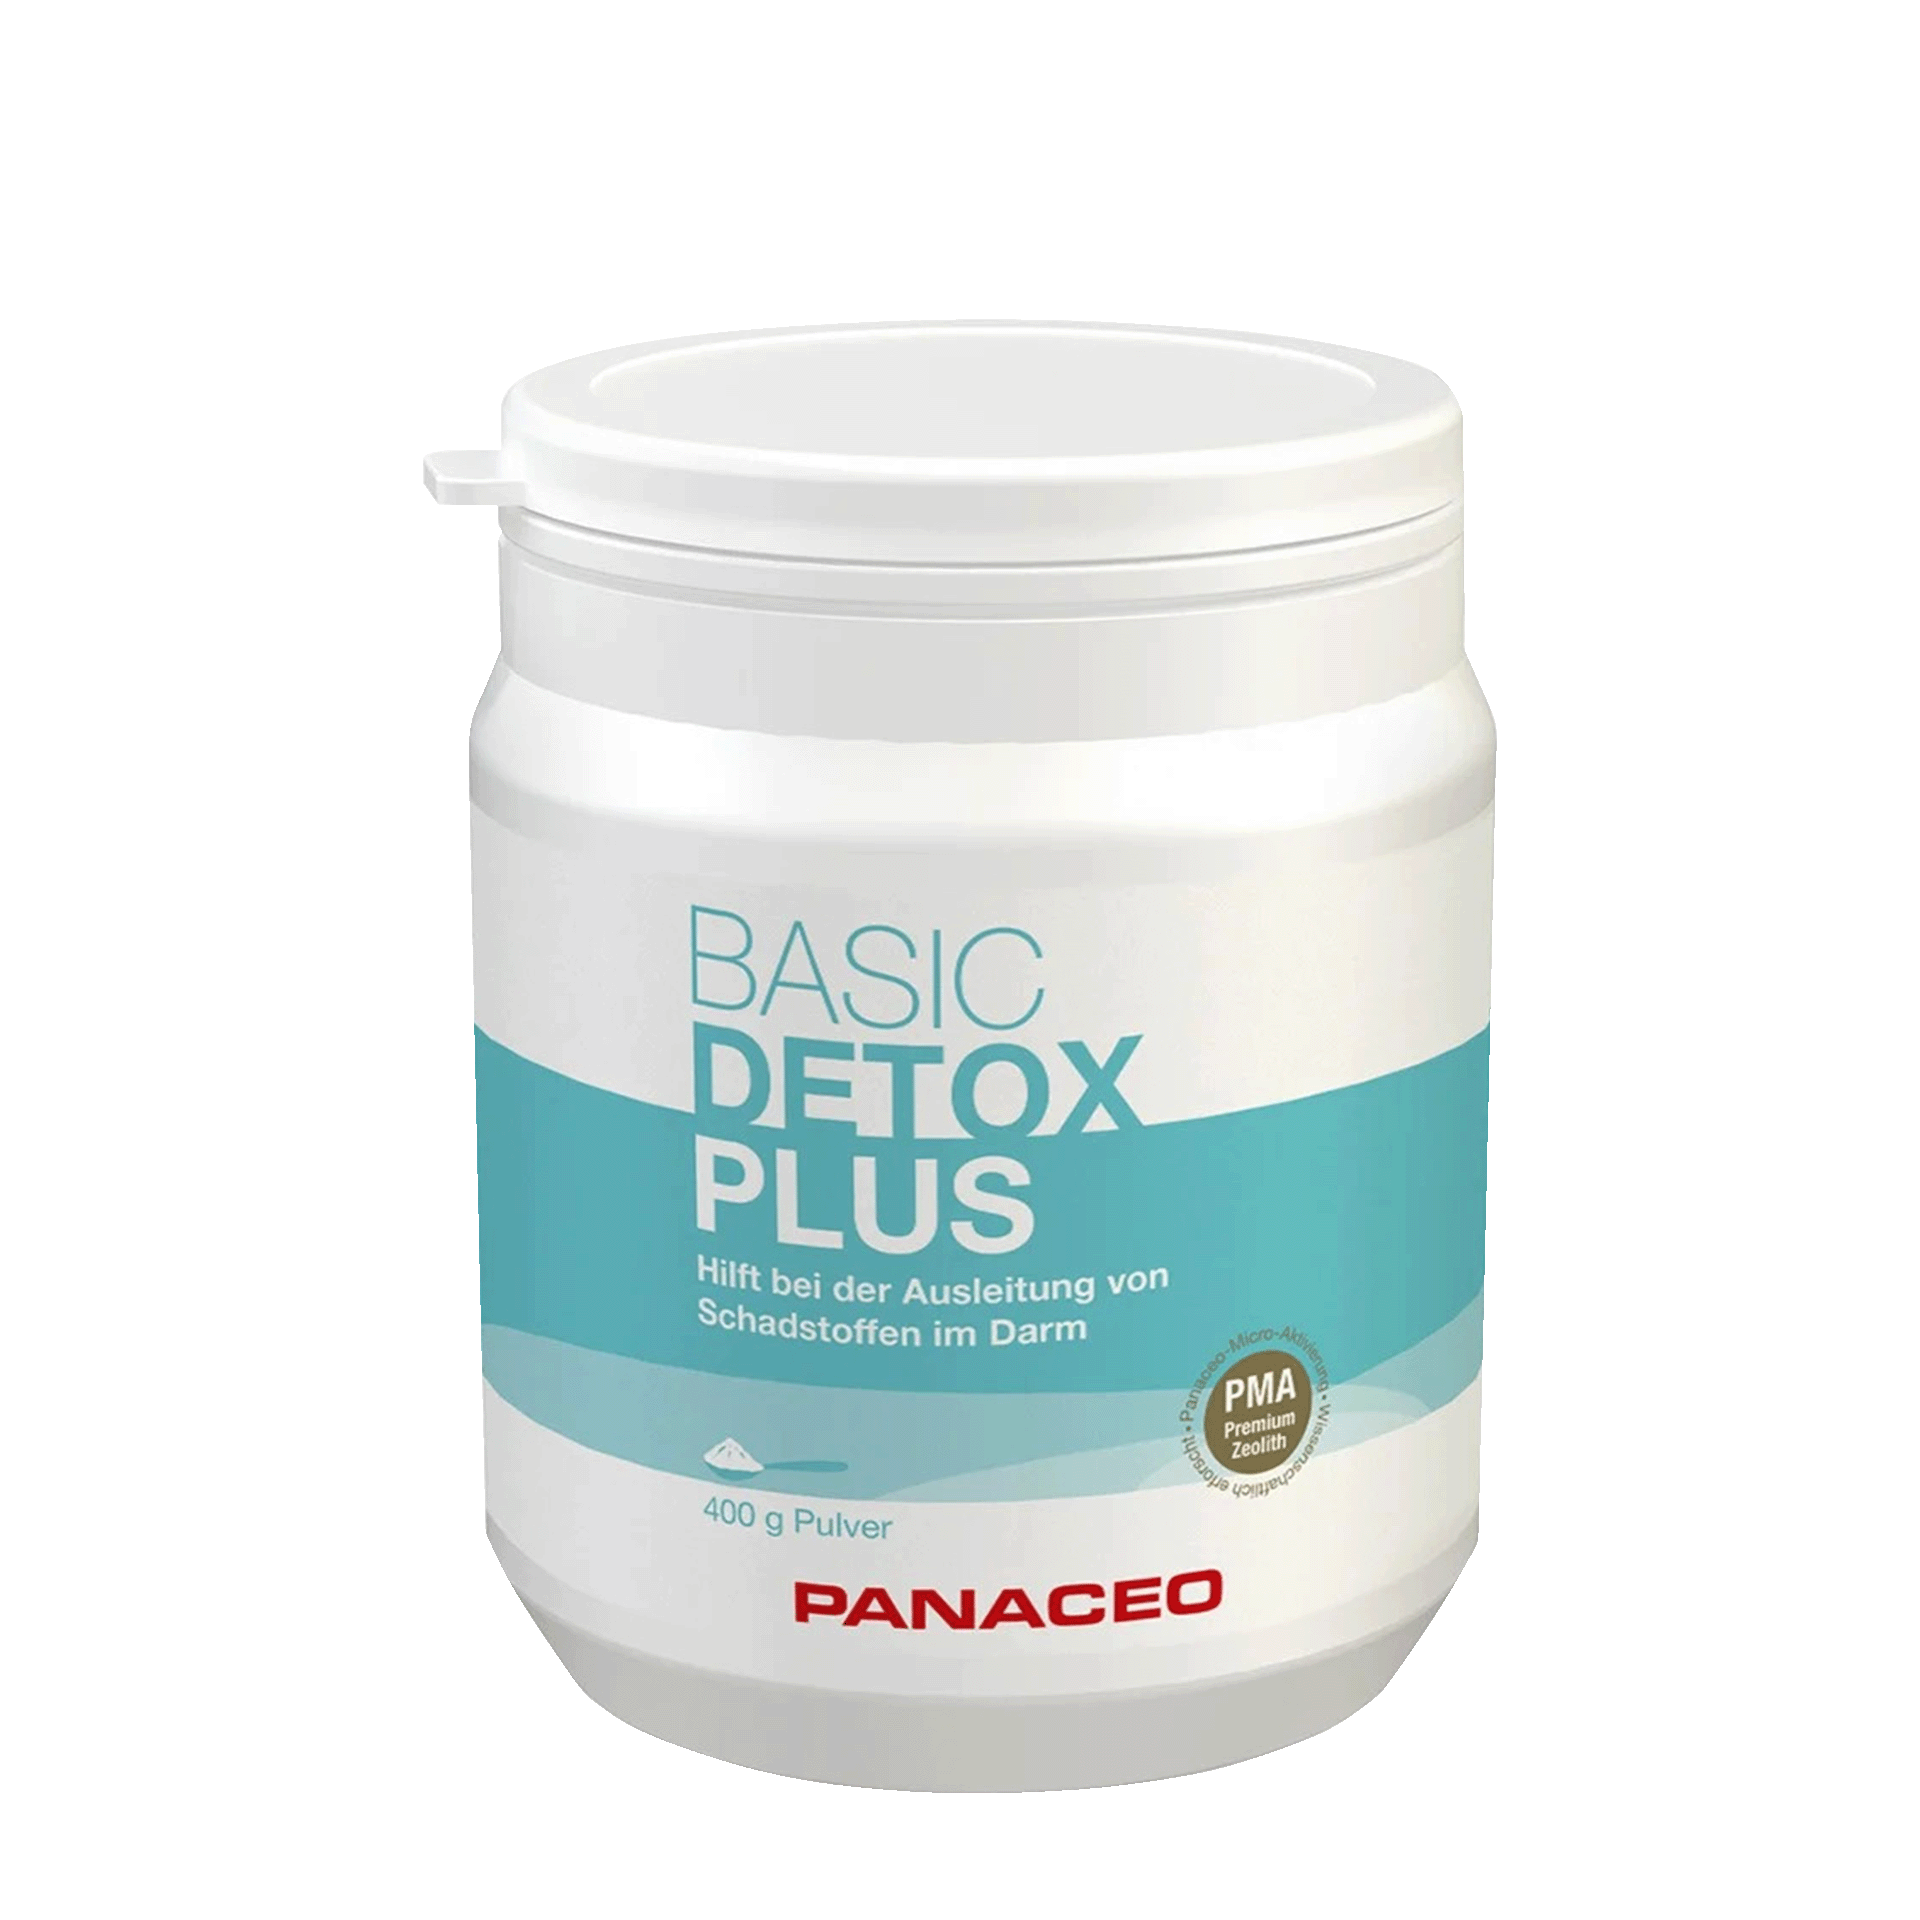 Panaceo Basic-Detox Plus, 400 g Pulver